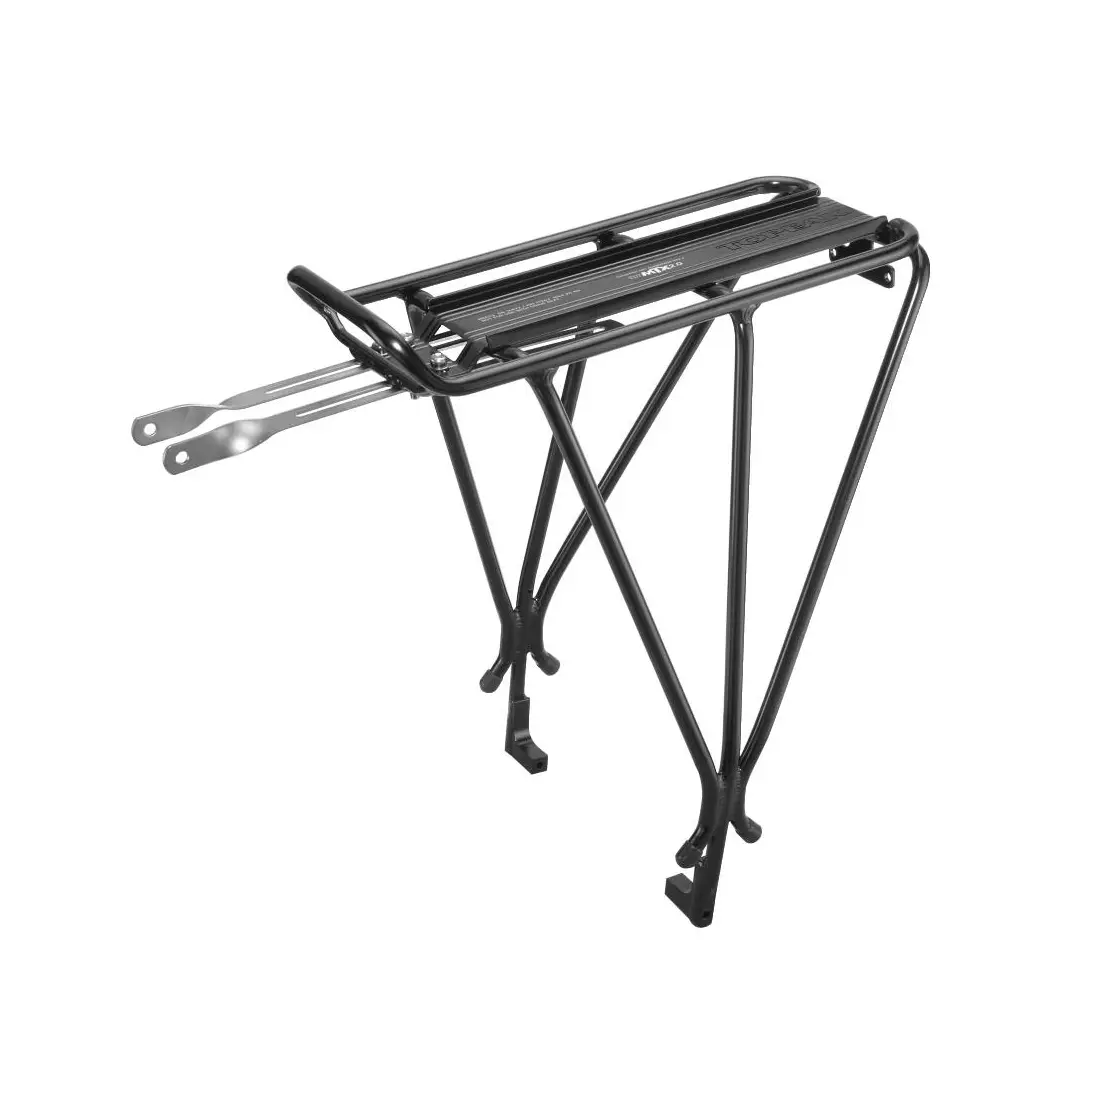 TOPEAK EXPLORER DISC MTX 2.0 rear bicycle rack, black